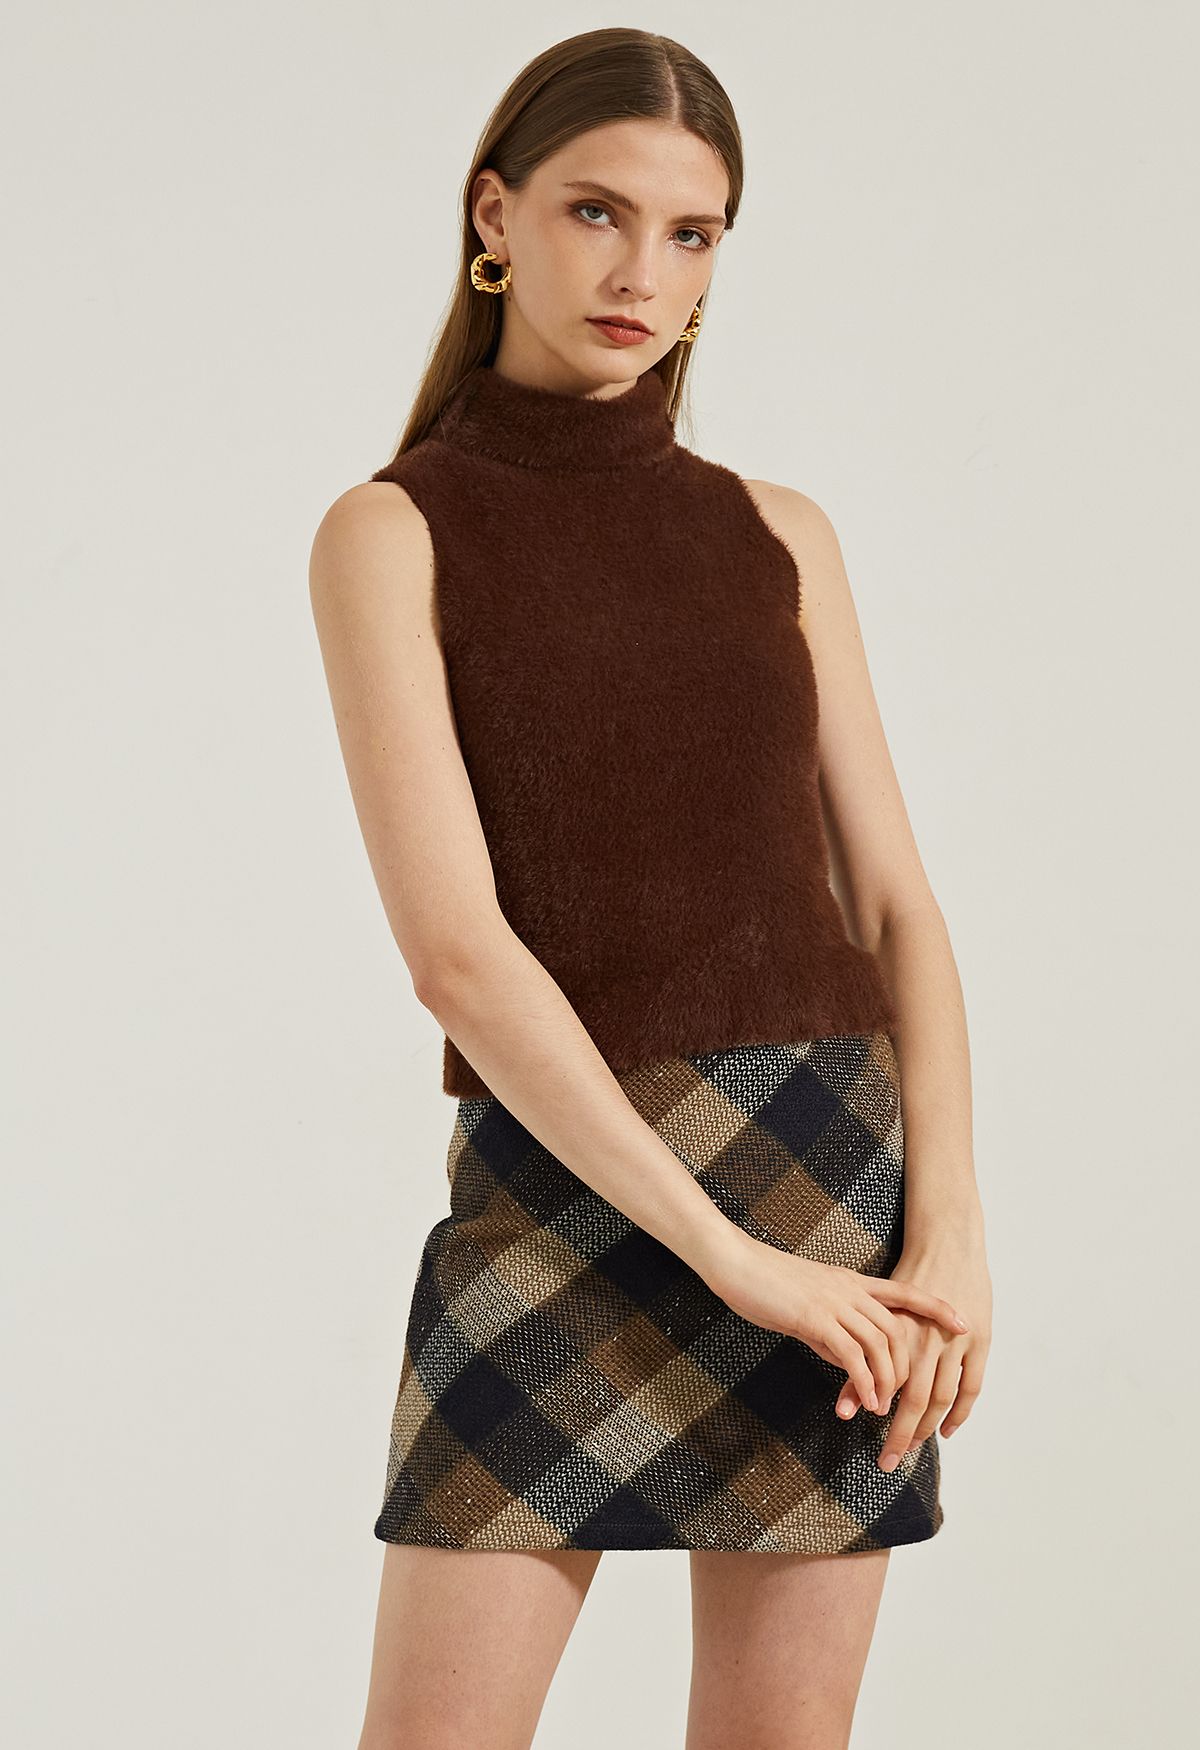 Minigonna in tweed a quadri retrò color marrone chiaro